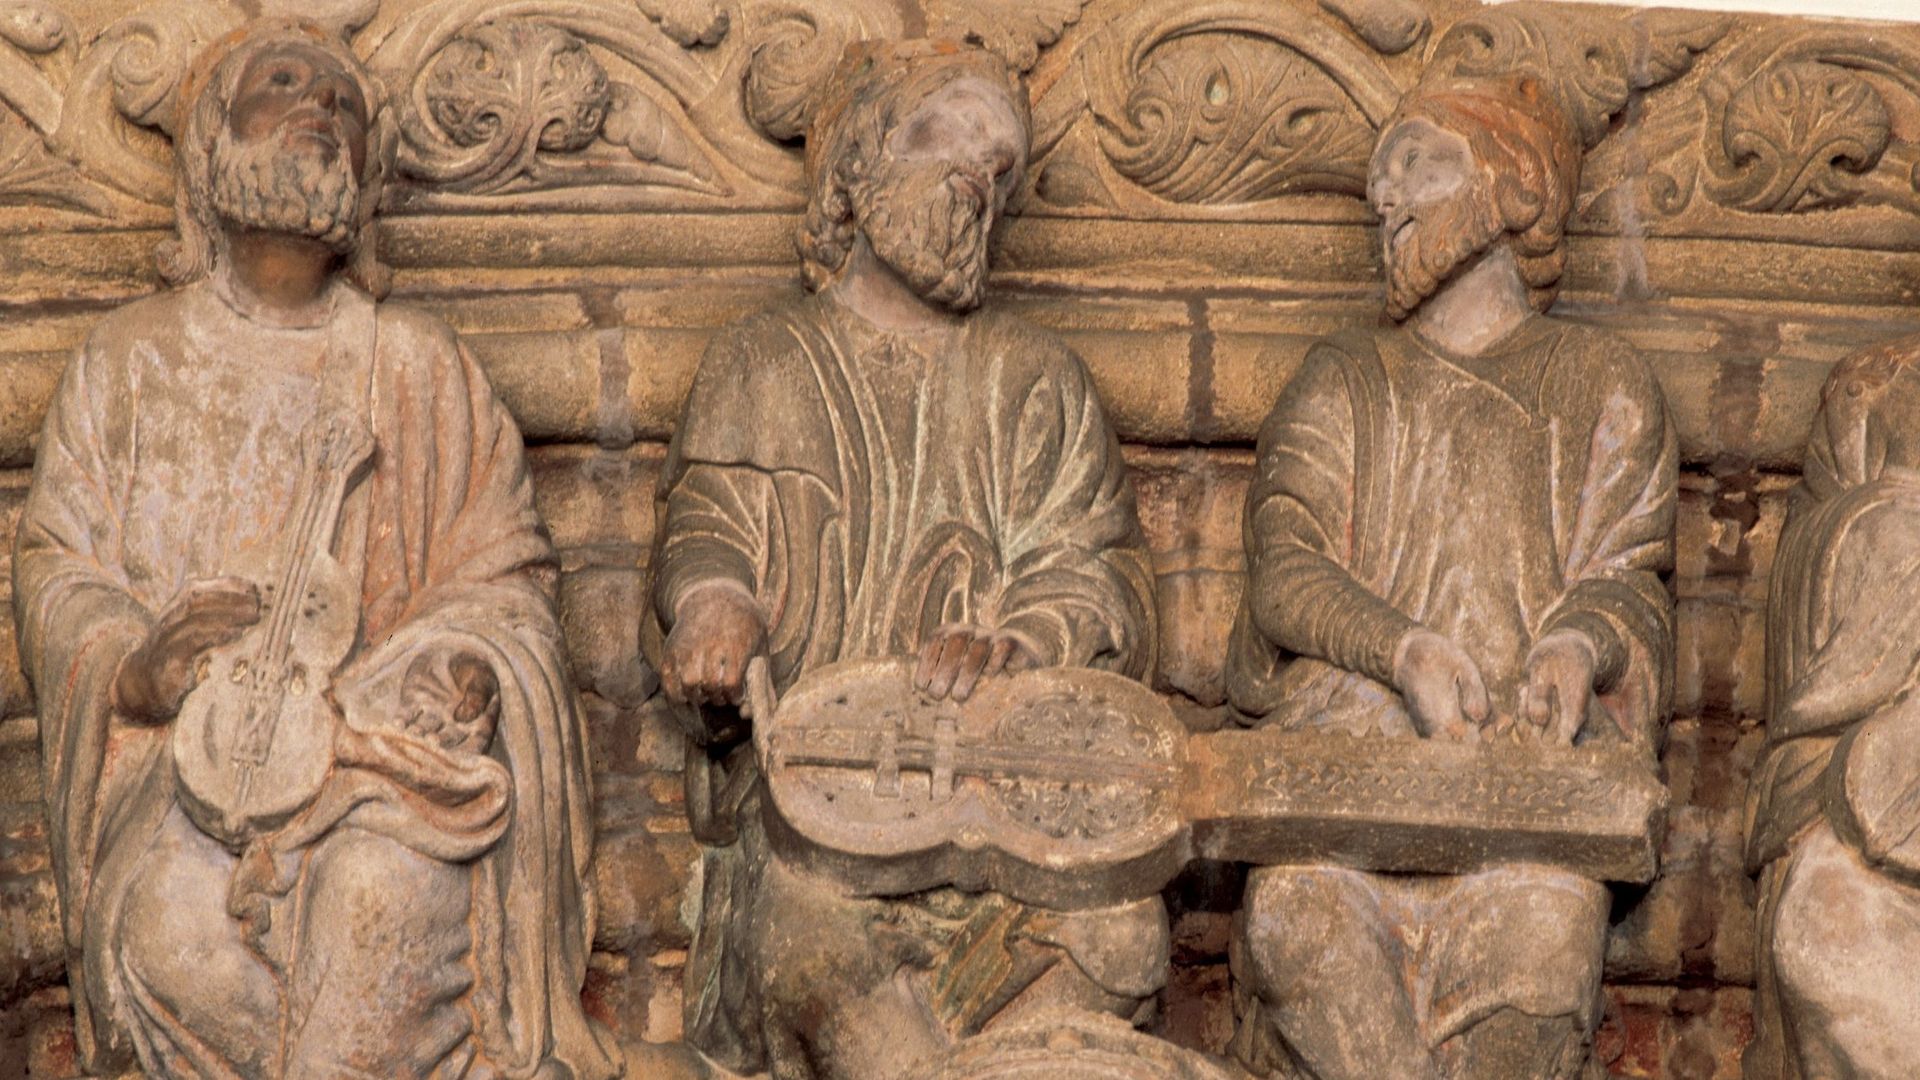 Représentation d'un organistrum, sur le Porche de la Gloire sculpté dans la pierre de la cathédrale St Jacques de Compostelle en Espagne